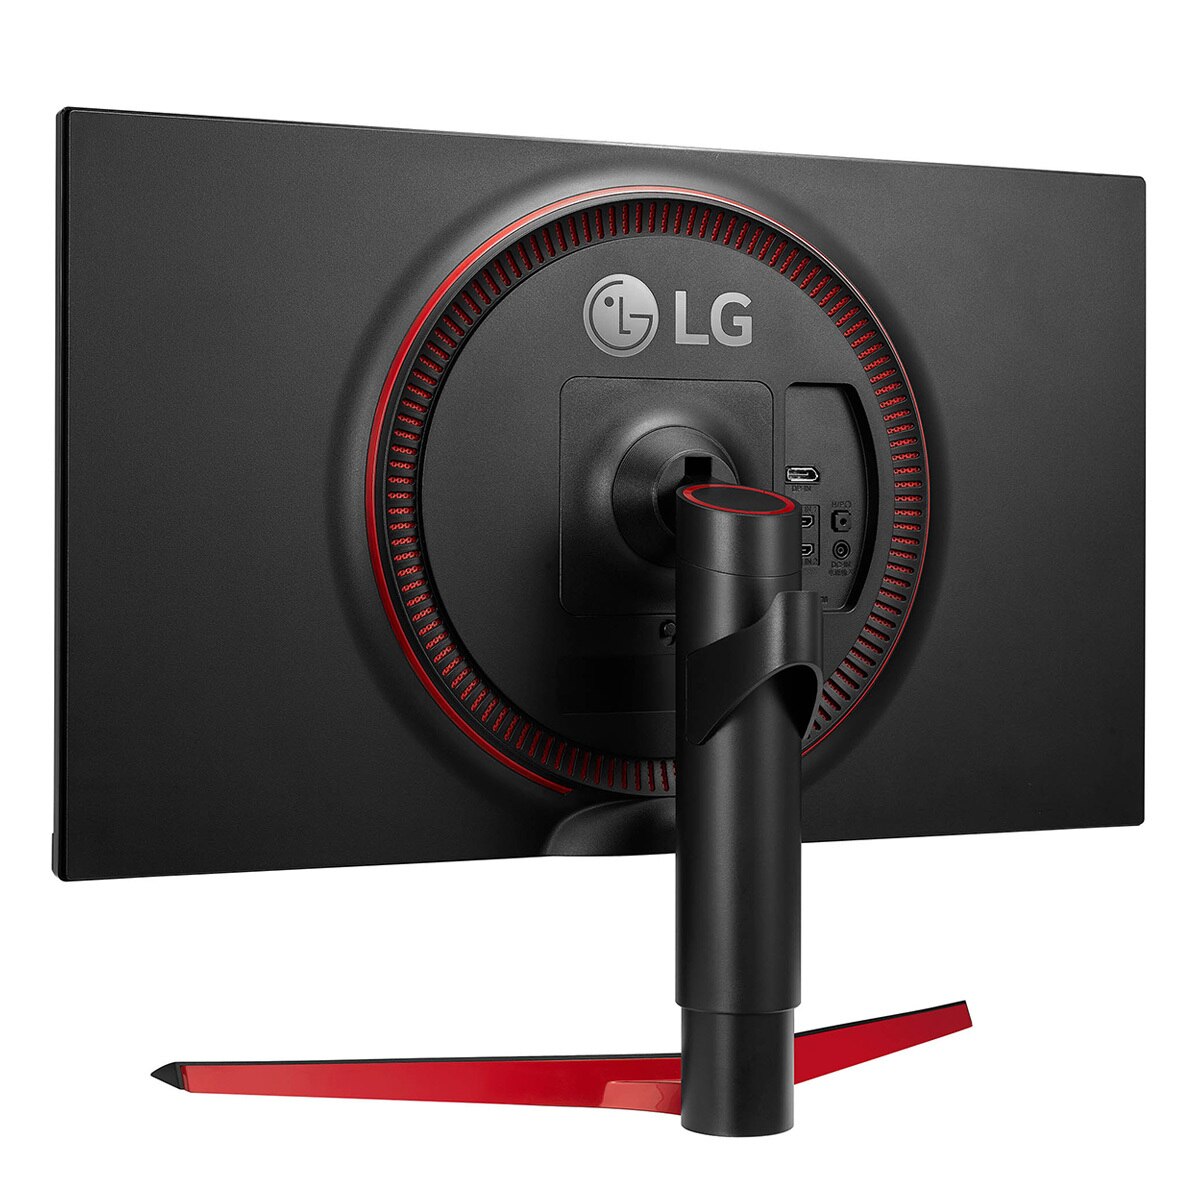 LG Monitor 27" para Gaming UltraGear Full HD con AMD FreeSync™